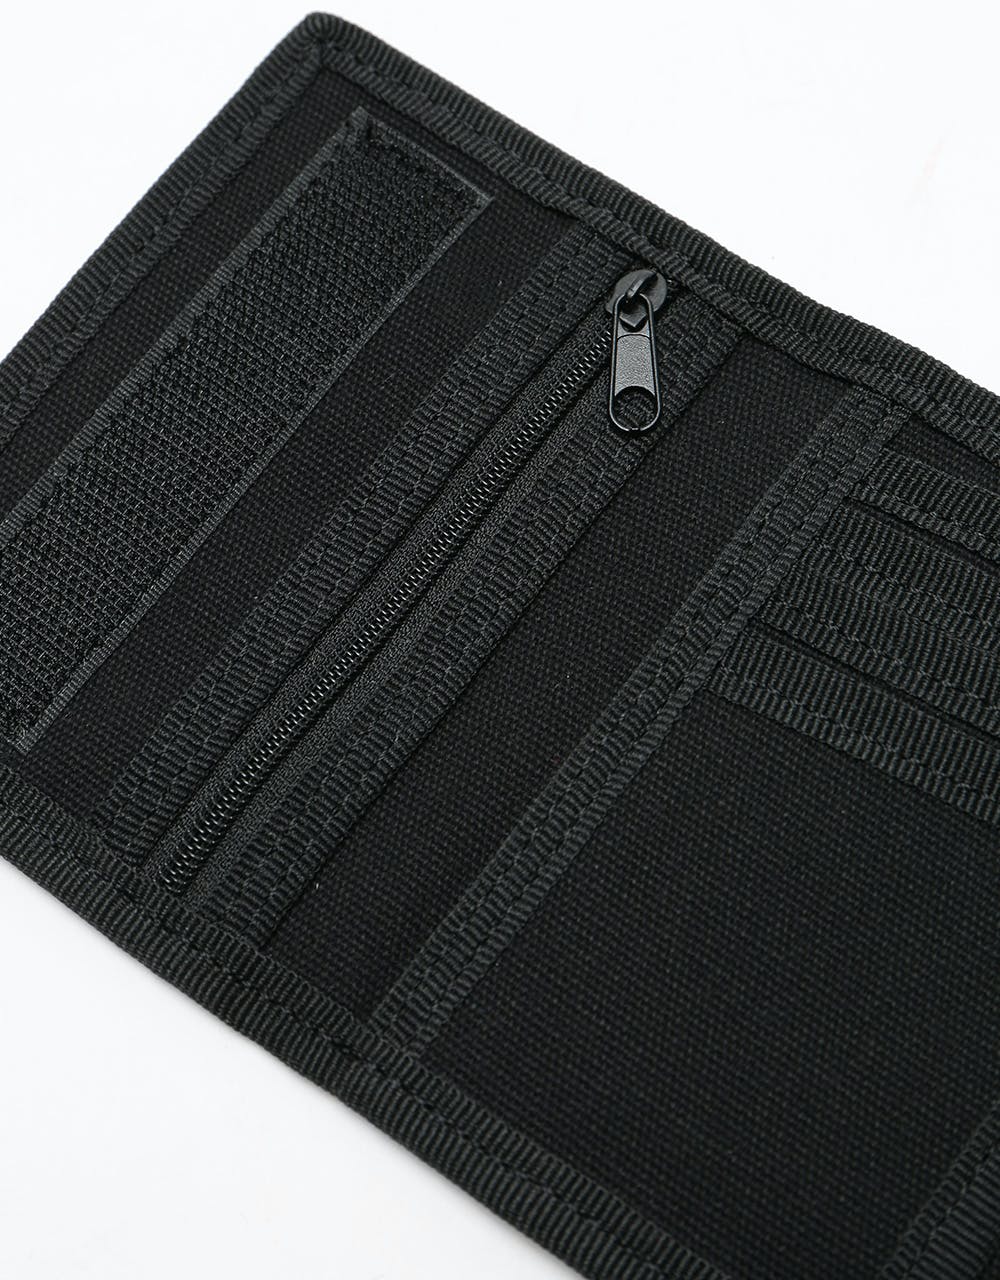 Independent Manner Wallet - Black